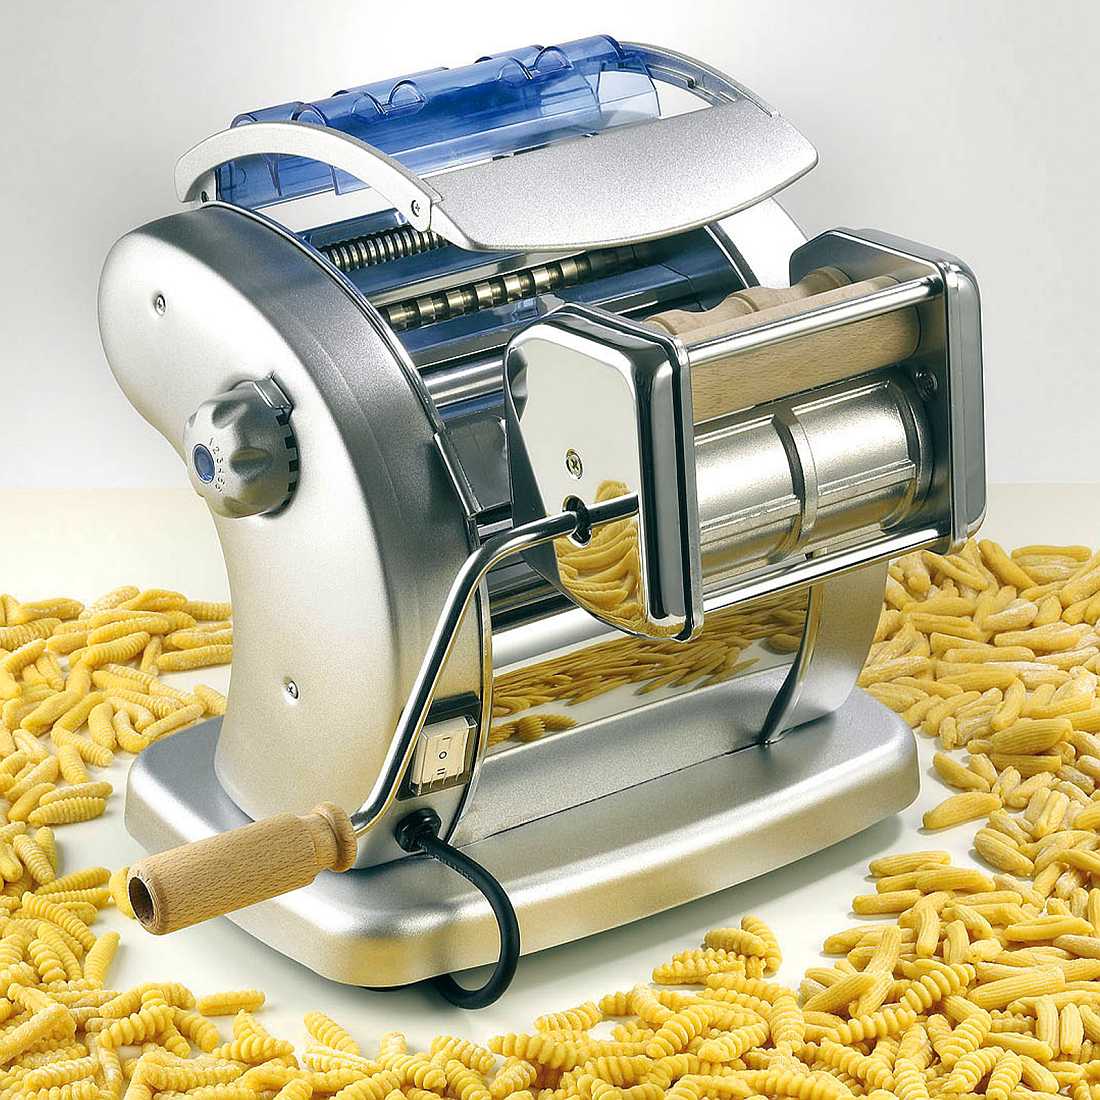 Electric Imperia Pasta Machine, Machines